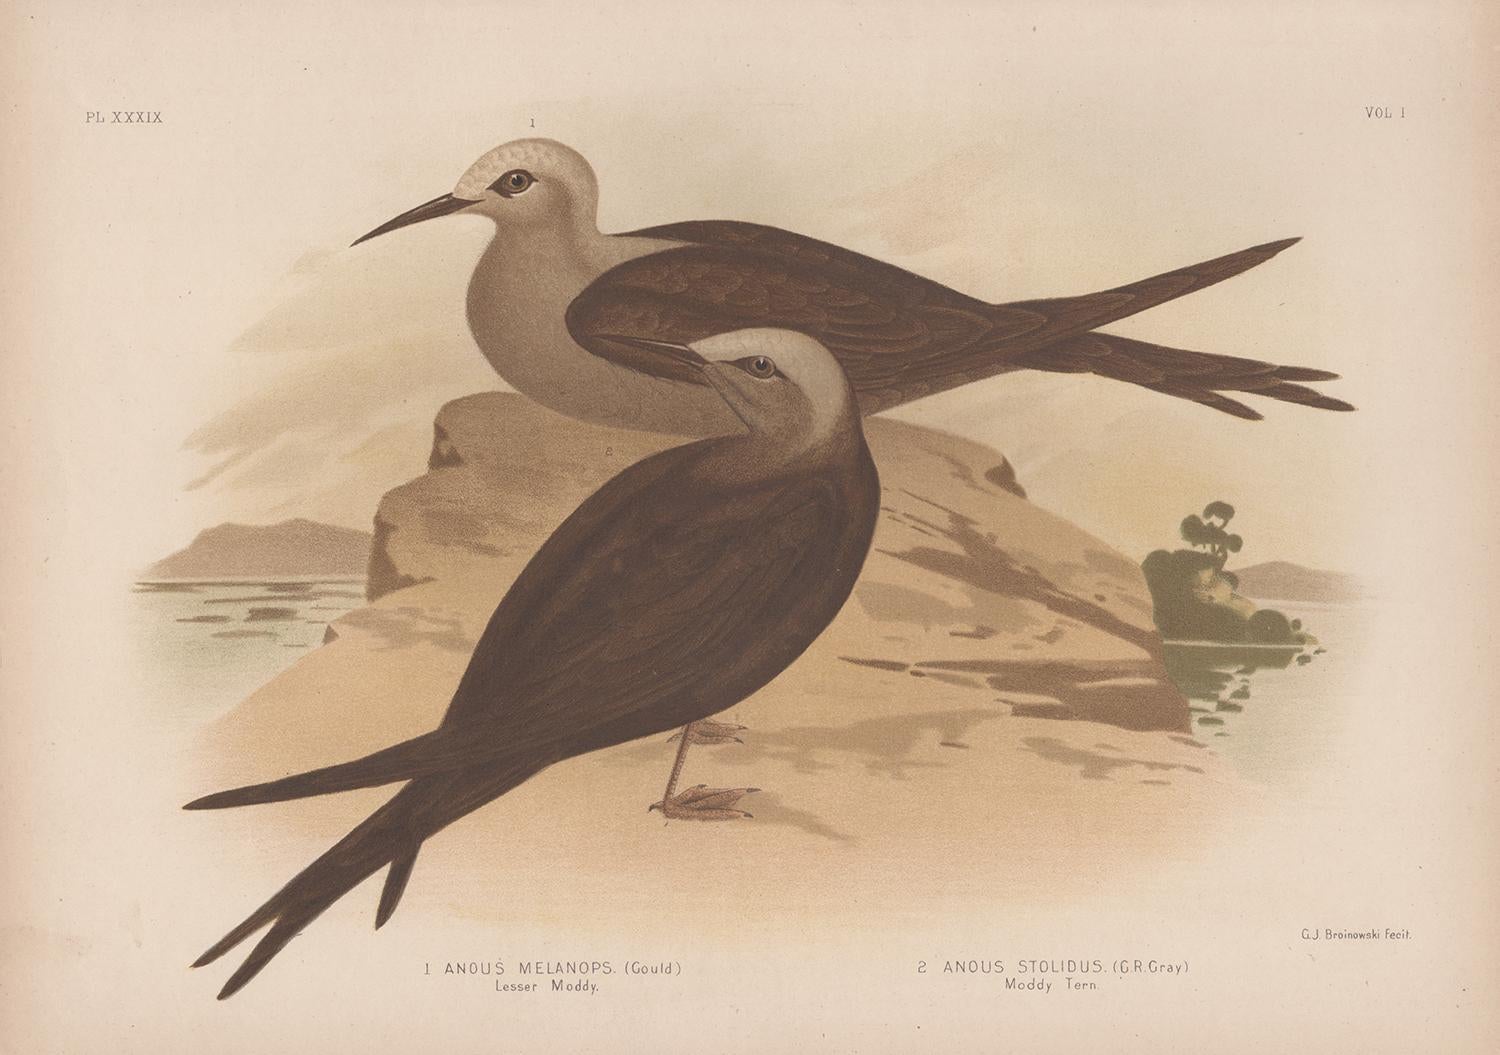 Antiker Seevogel-Chromolithografie-Druck von Moddy und Moddy Tern, 1889